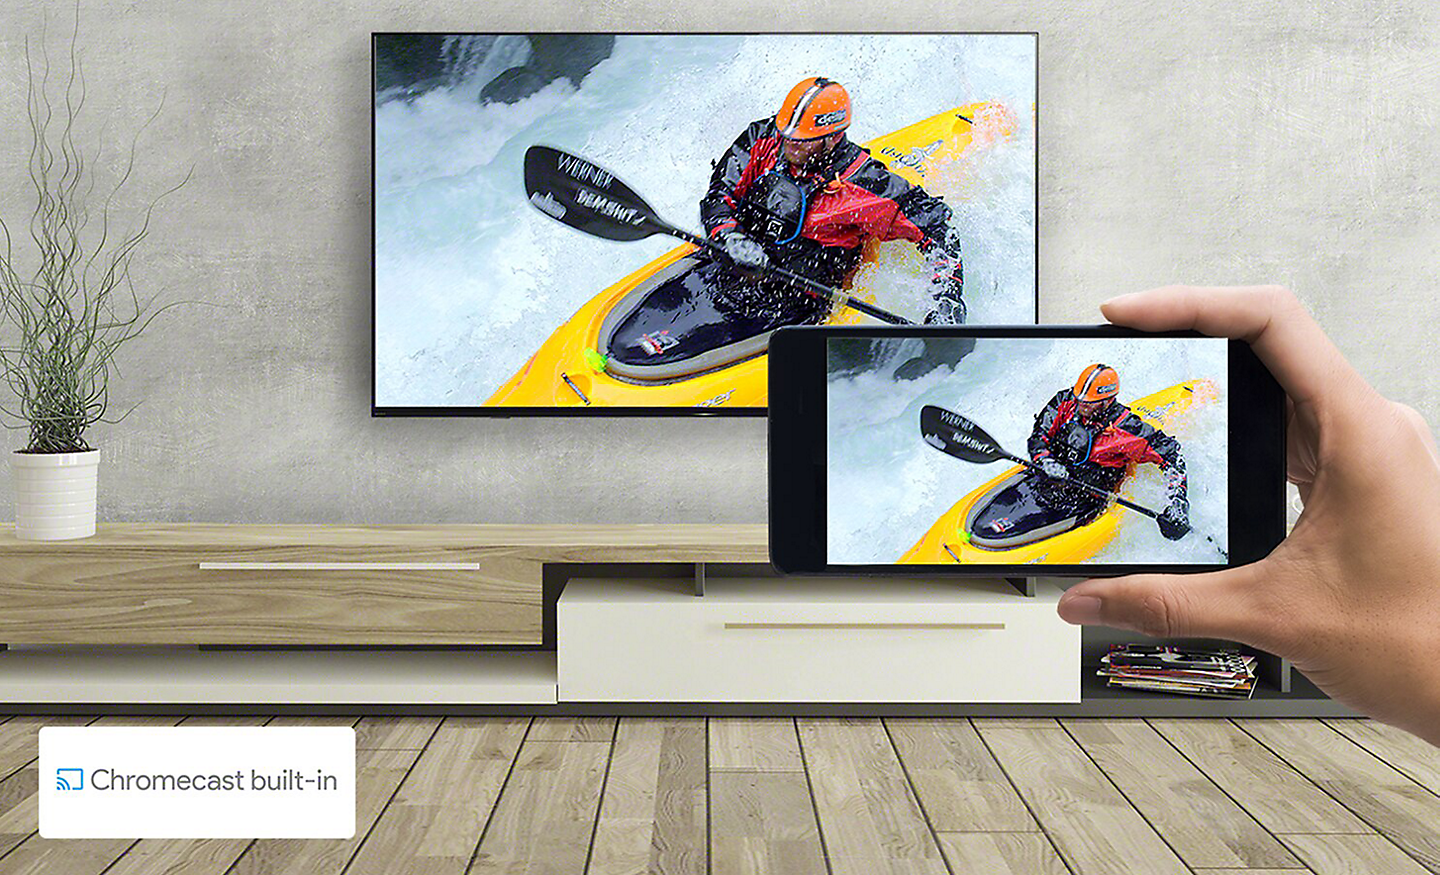 Salon montrant un téléviseur avec une main tenant un téléphone intelligent. Les deux écrans montrent la même image de kayak. Le logo Chromecast built-in est affiché dans le coin inférieur droit